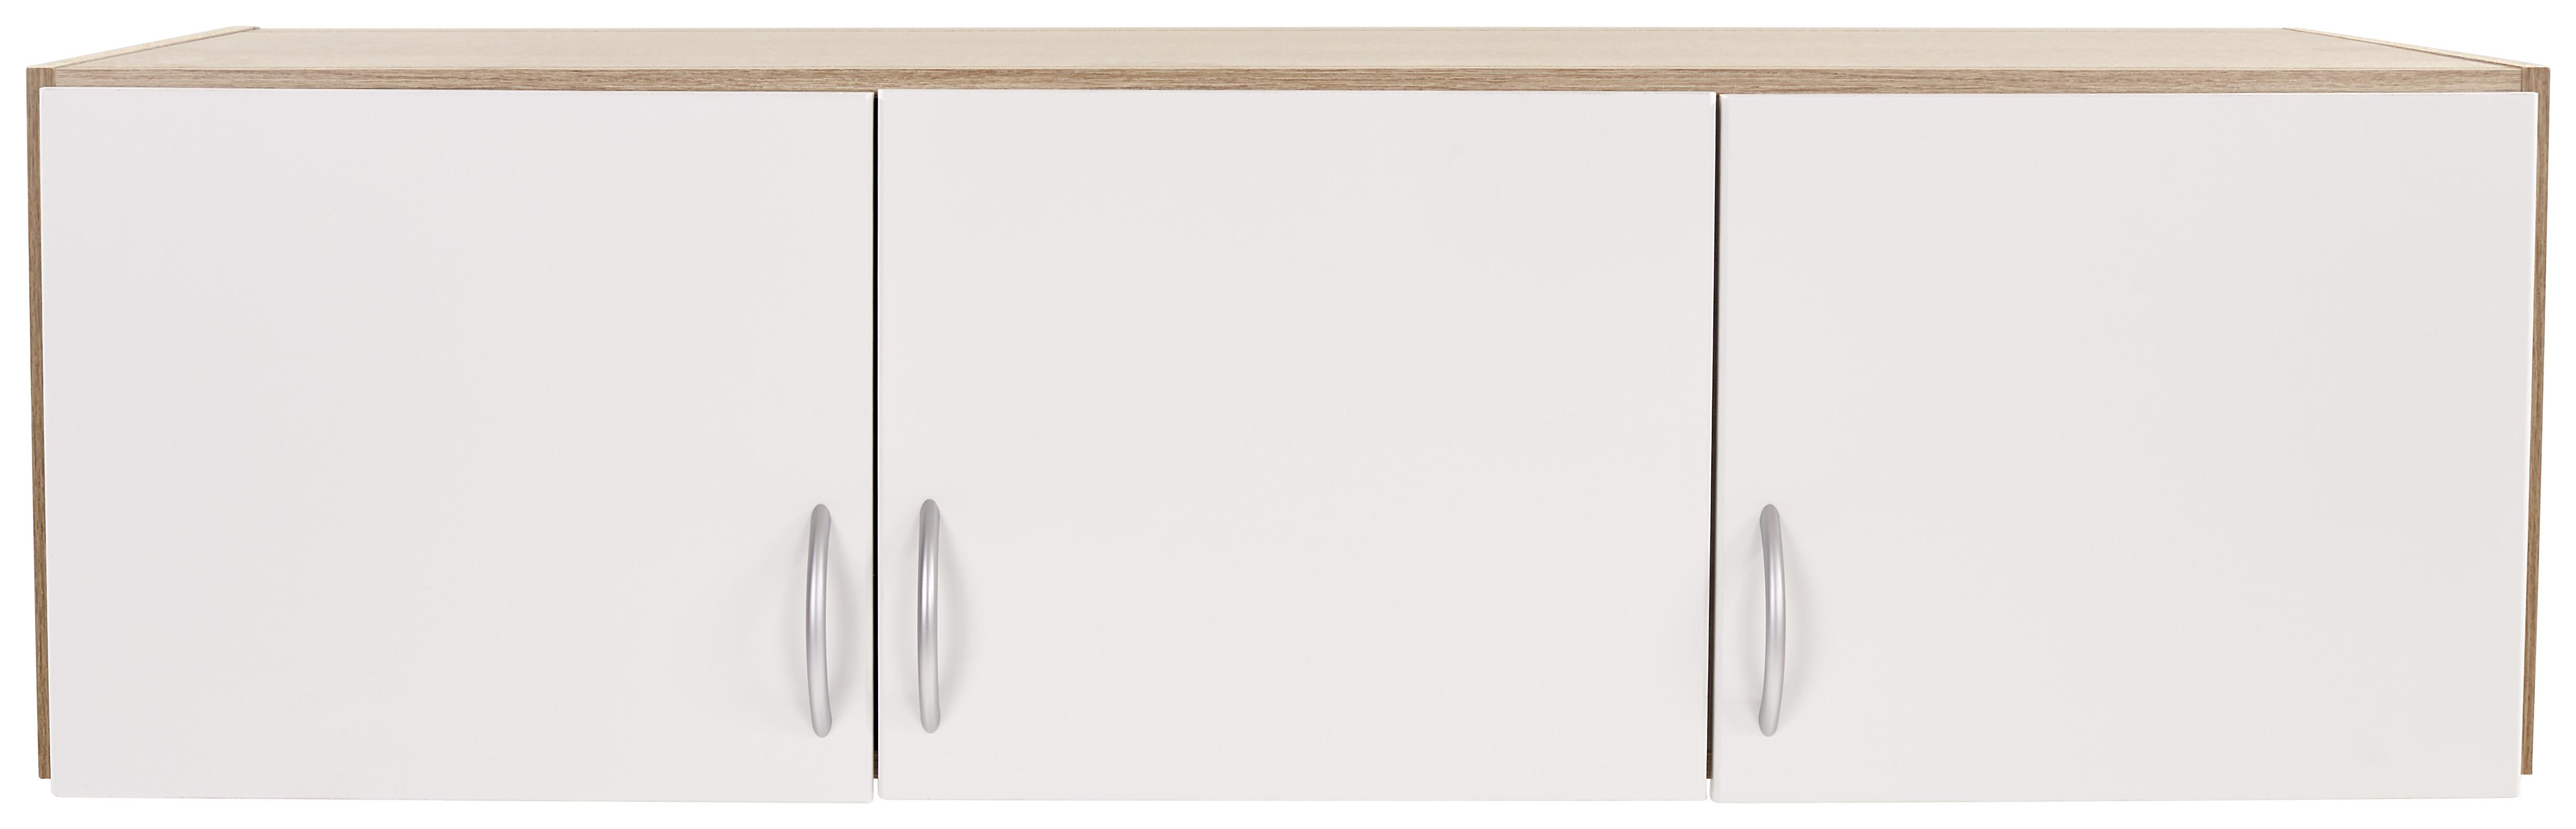 Dulap auxiliar superior Karo-extra - alb/culoare lemn stejar, Konventionell, material pe bază de lemn (136/39/54cm)